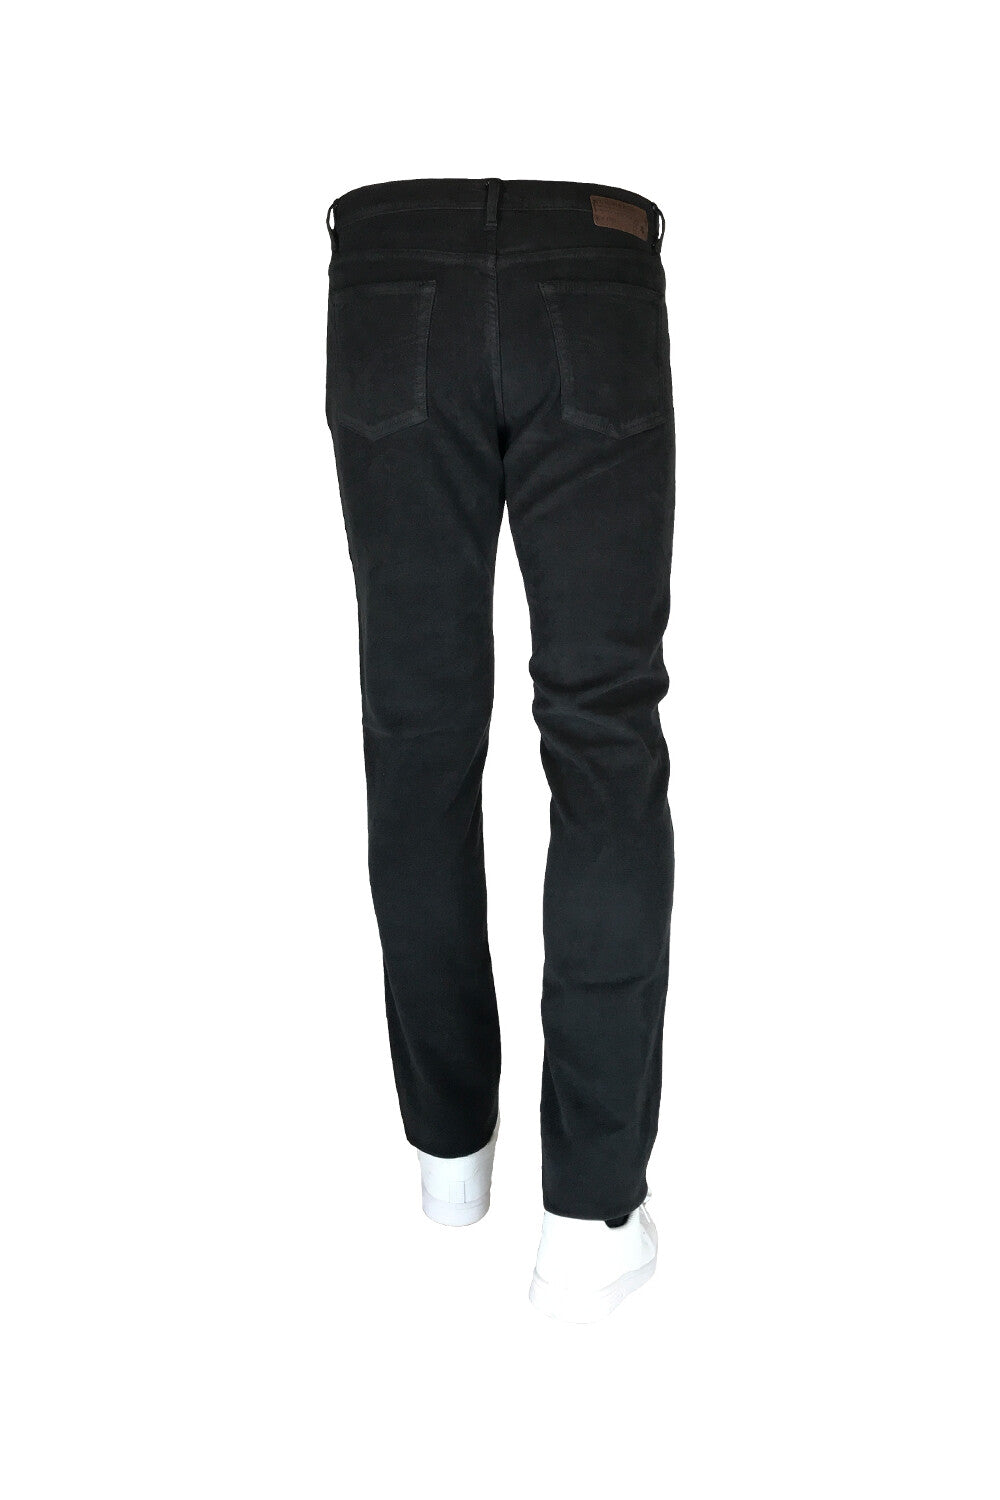 Jeans Colorato Bags Conf Sea Barrier Taglie Forti Colore Nero - Blocco94